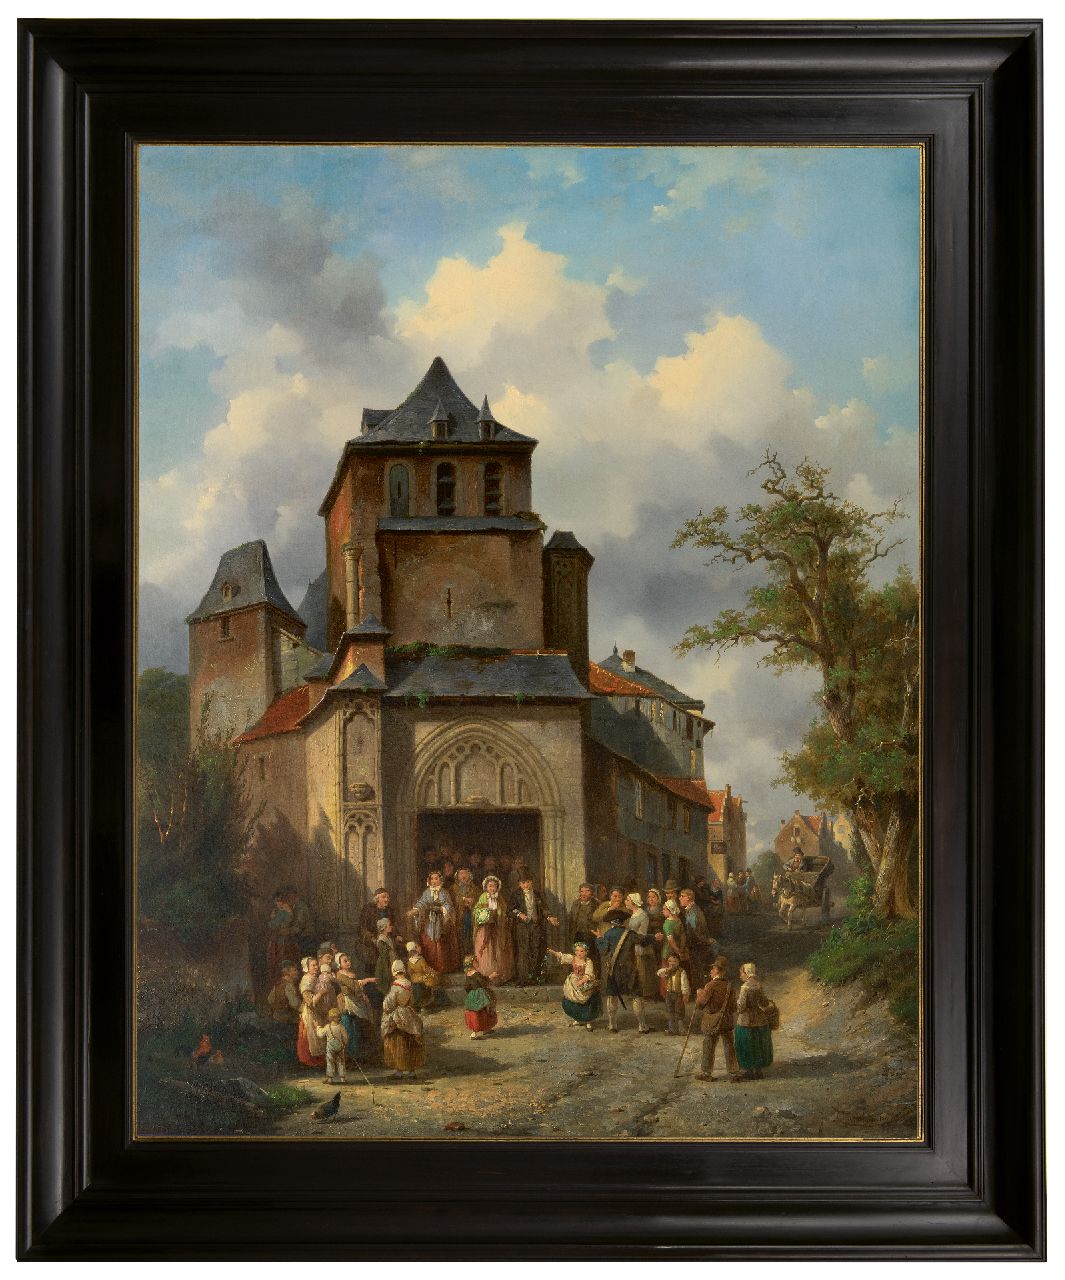 Carabain J.F.J.  | 'Jacques' François Joseph Carabain | Gemälde zum Verkauf angeboten | Die goldene Hochzeit, Öl auf Leinwand 96,2 x 76,2 cm, Unterzeichnet u.r. und datiert 1861